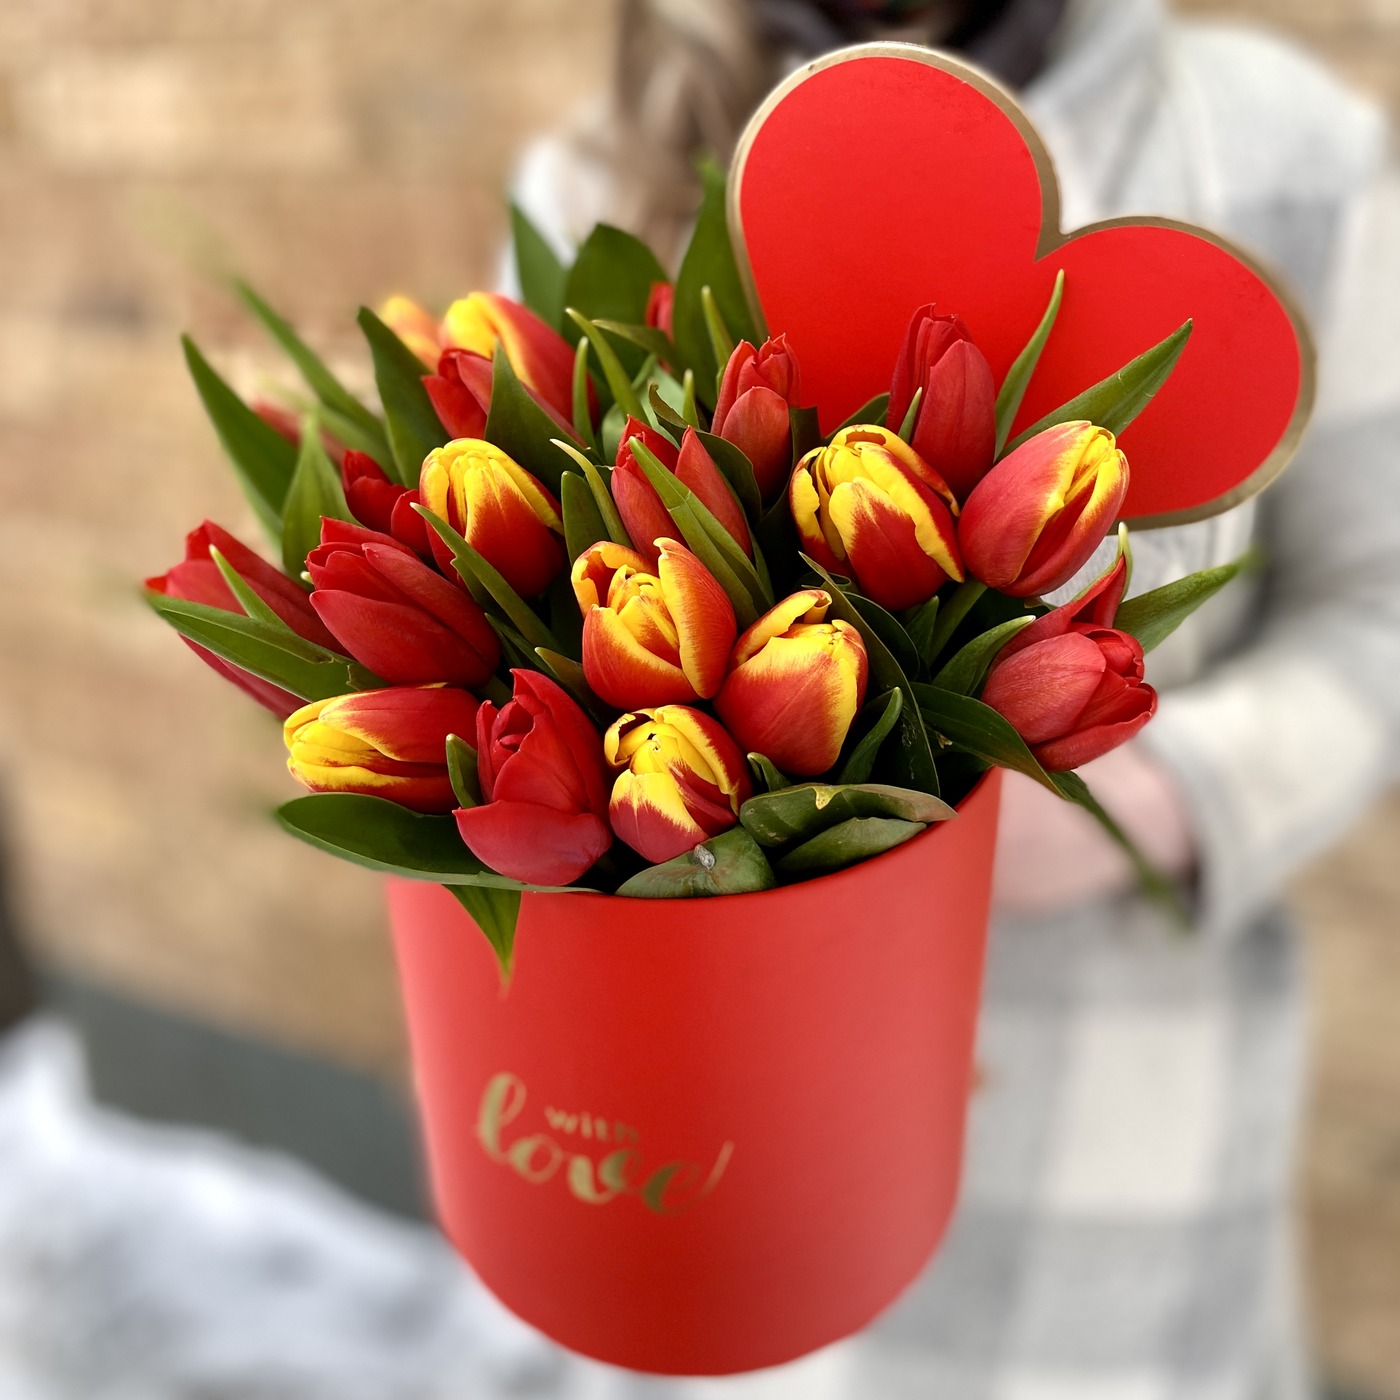 25 тюльпанов в коробке С Любовью